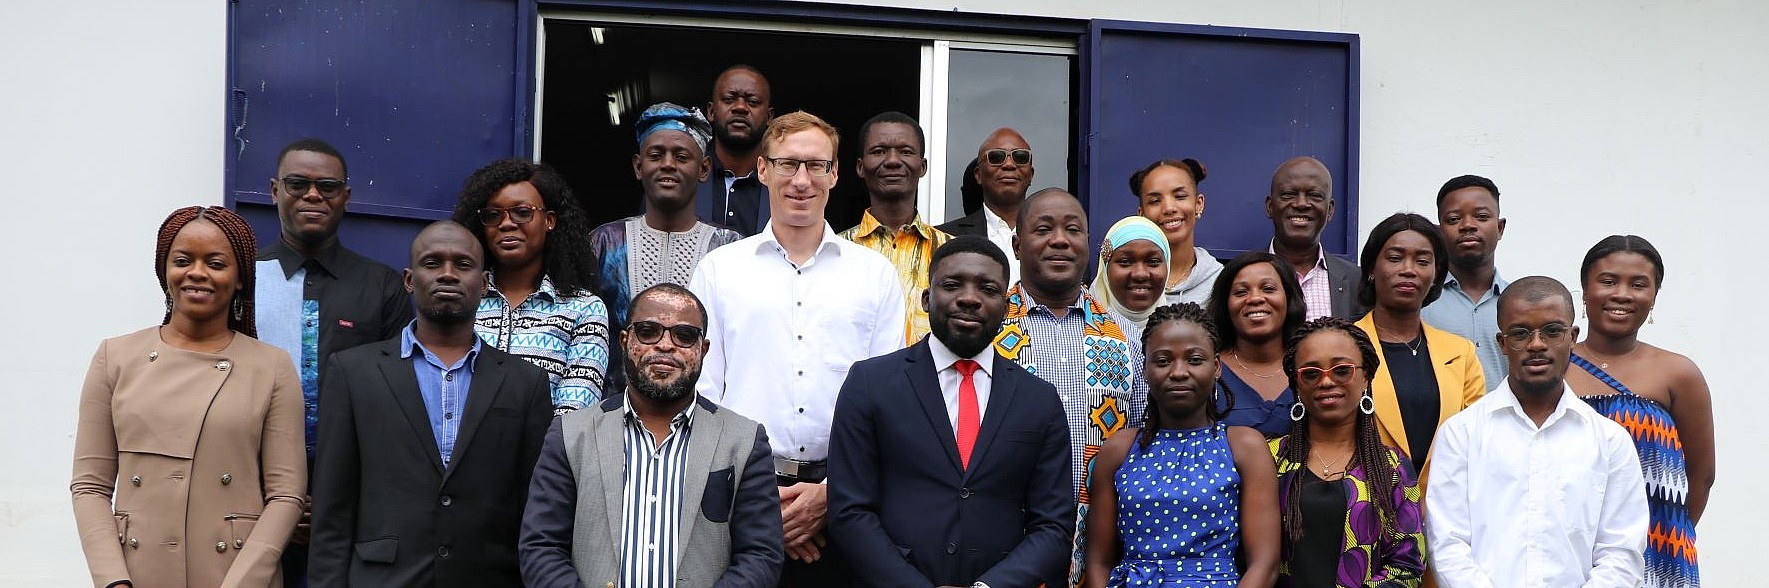 Gruppenfoto der FES-Mitarbeiter:innen in der Elfenbeinküste